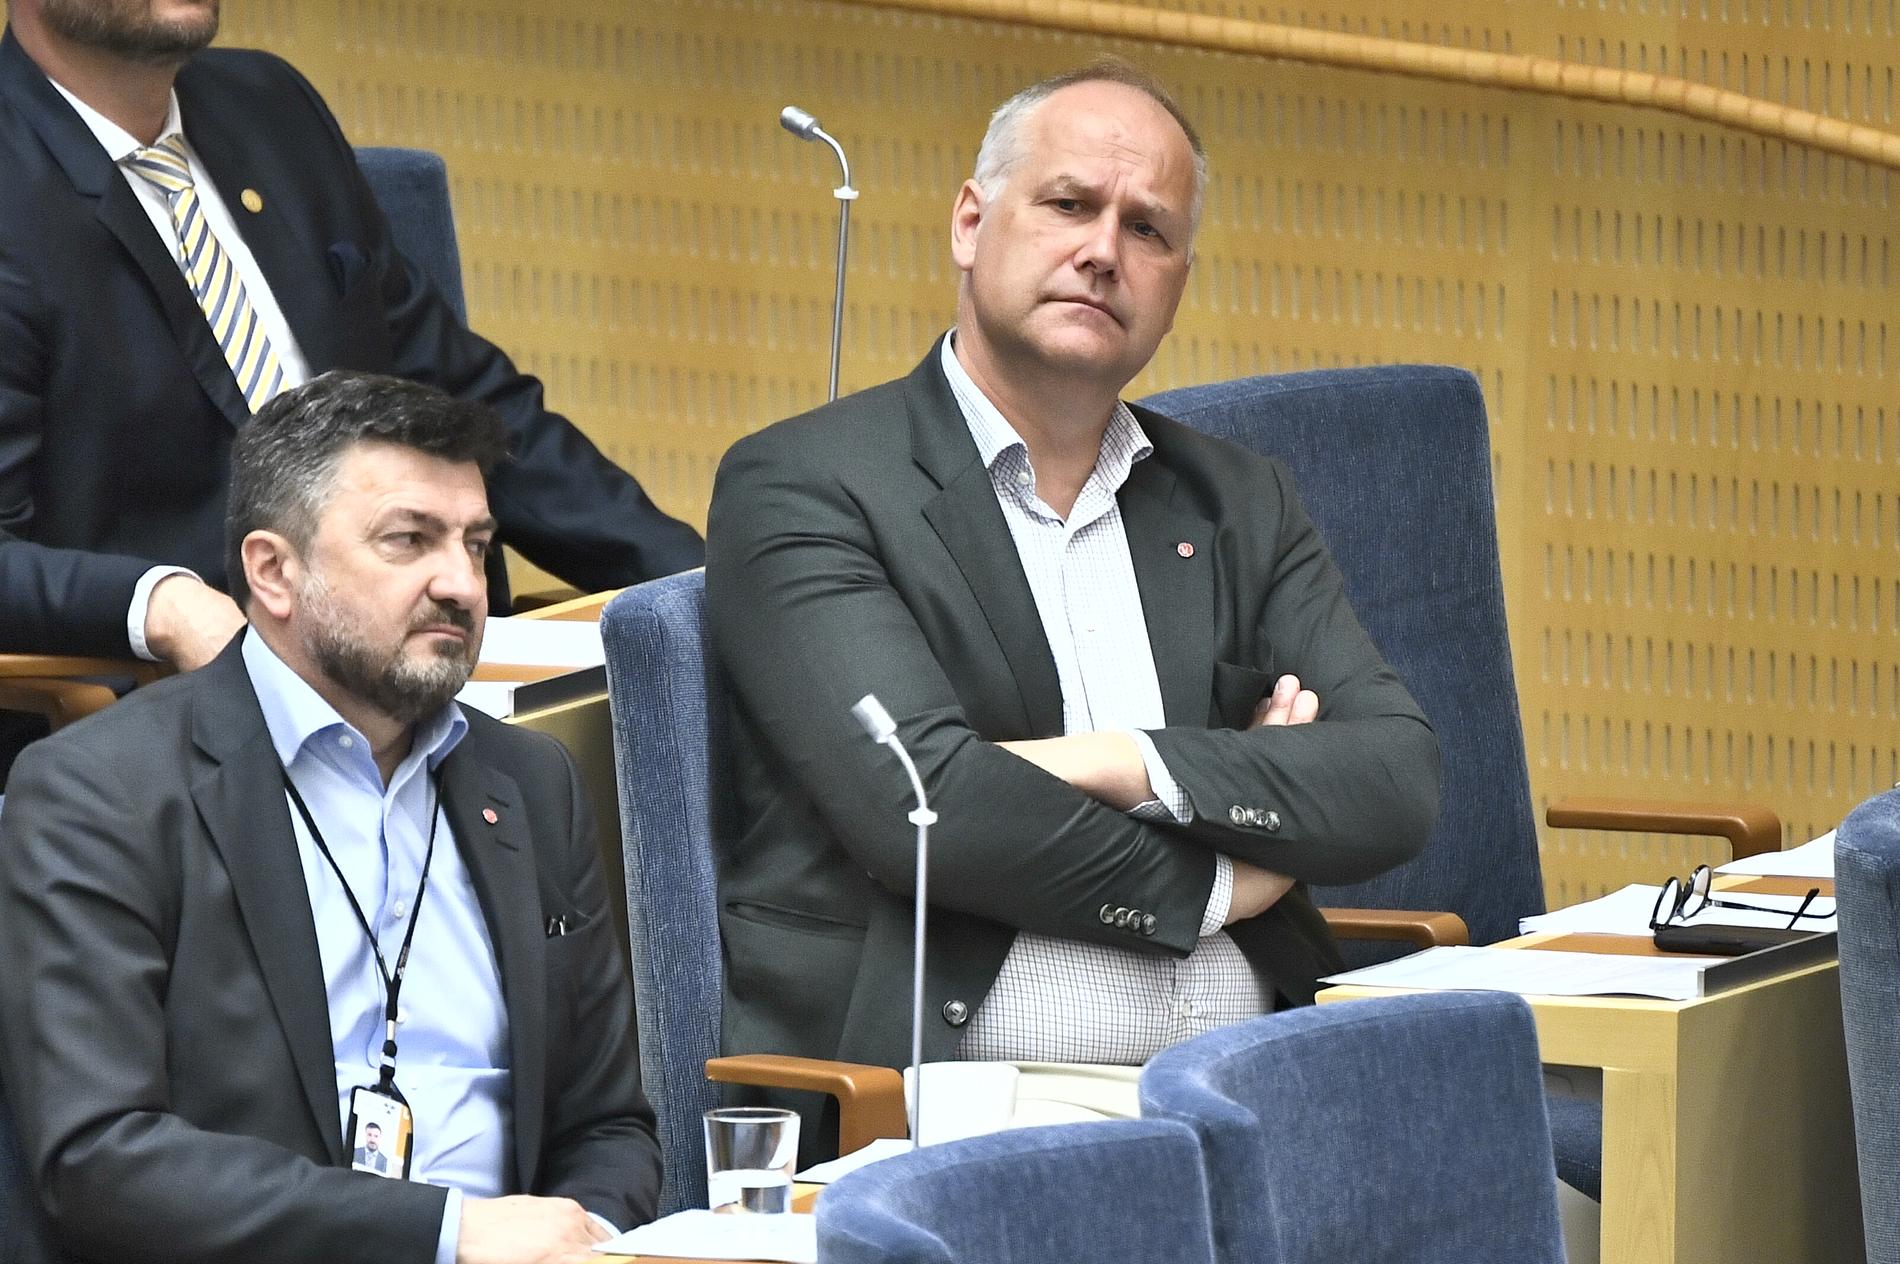 Vänsterpartiets partiledare Jonas Sjöstedt under onsdagens partiledardebatt.